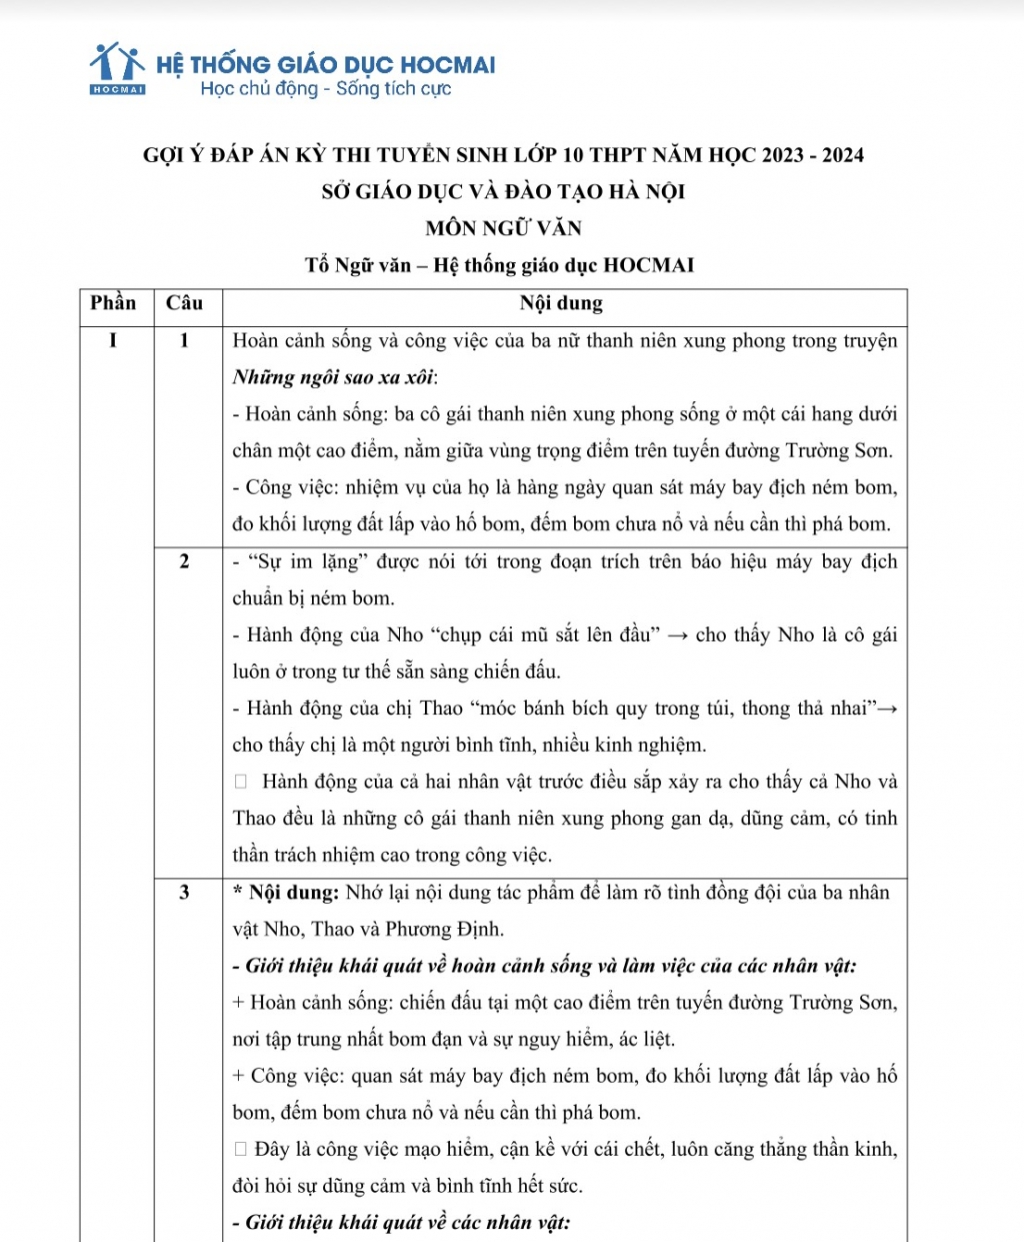 Gợi ý đáp án đề thi Ngữ văn tuyển sinh lớp 10 ở Hà Nội